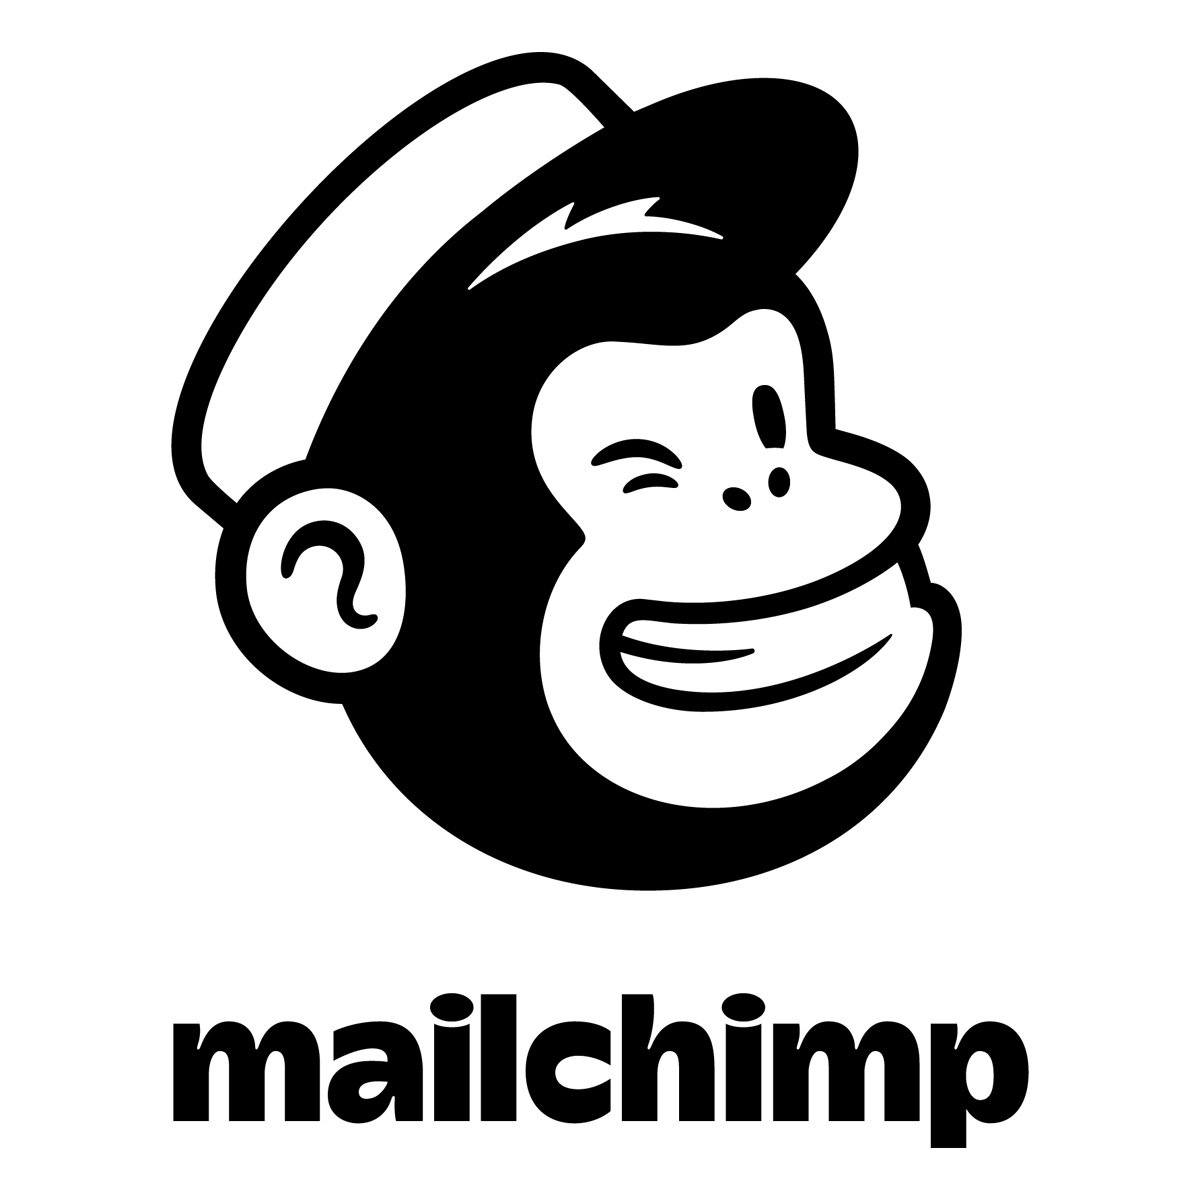 Mailchimp mascot